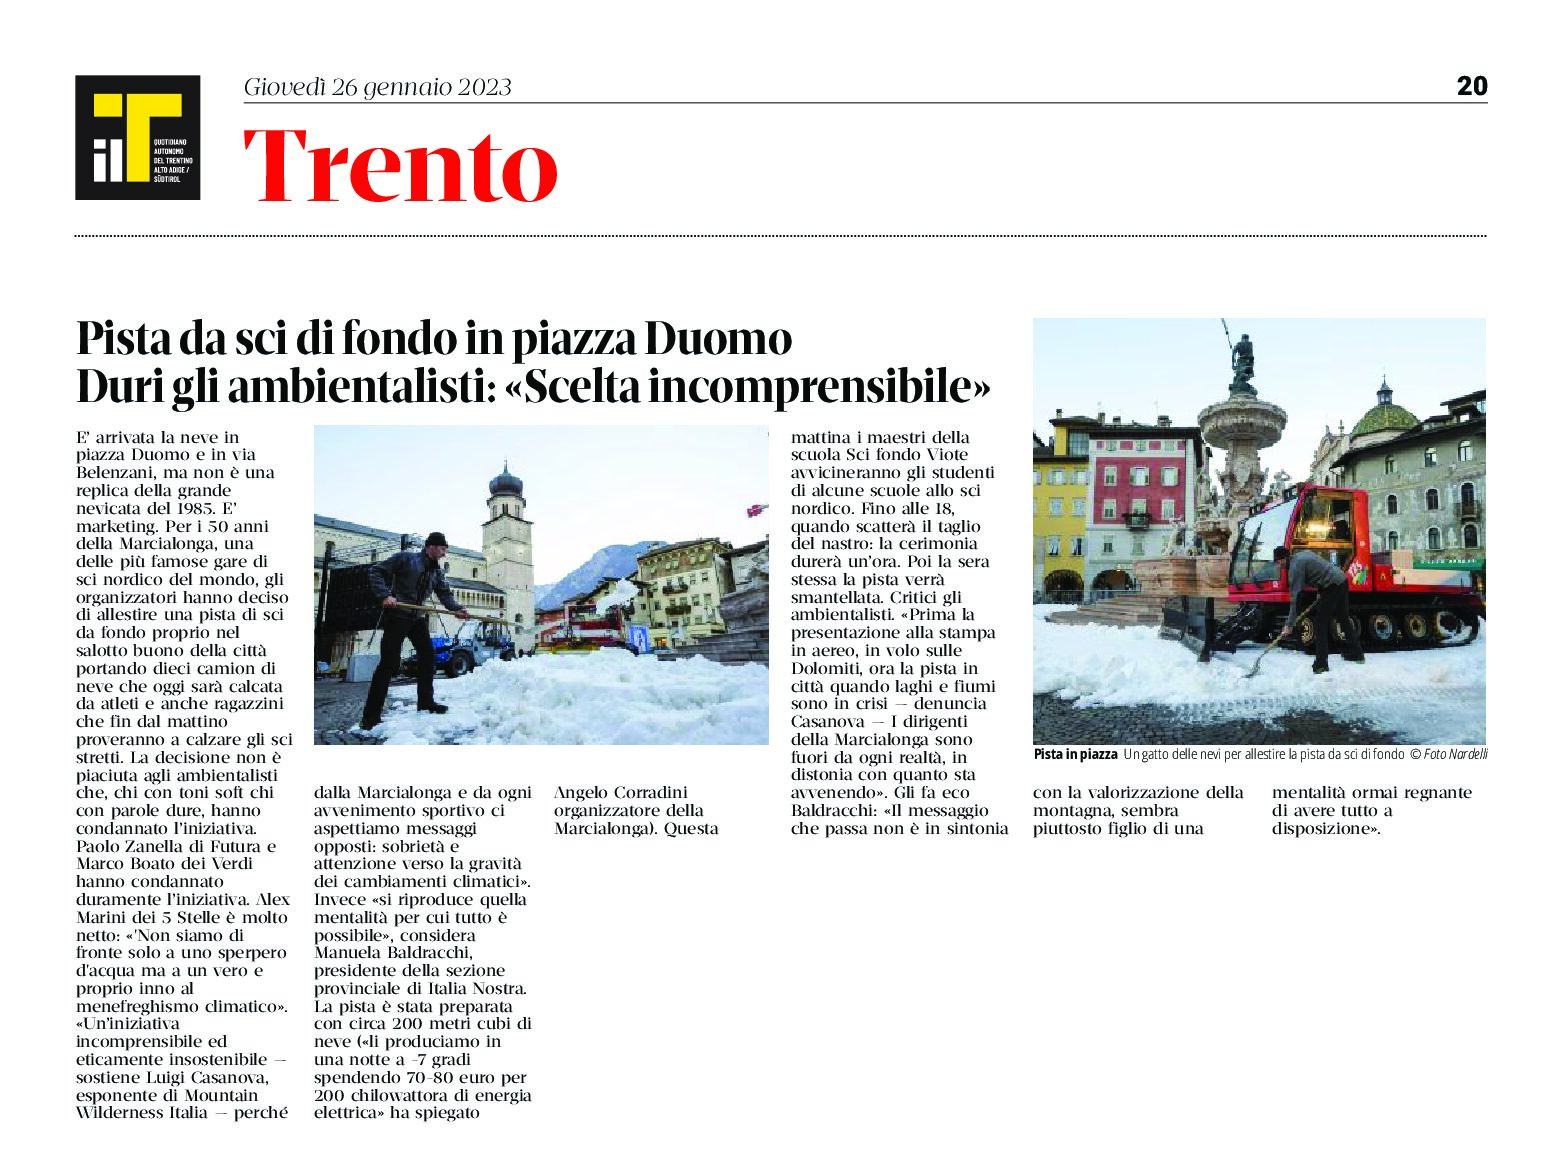 Trento, Marcialonga: pista da sci di fondo in piazza Duomo. Ambientalisti “scelta incomprensibile”